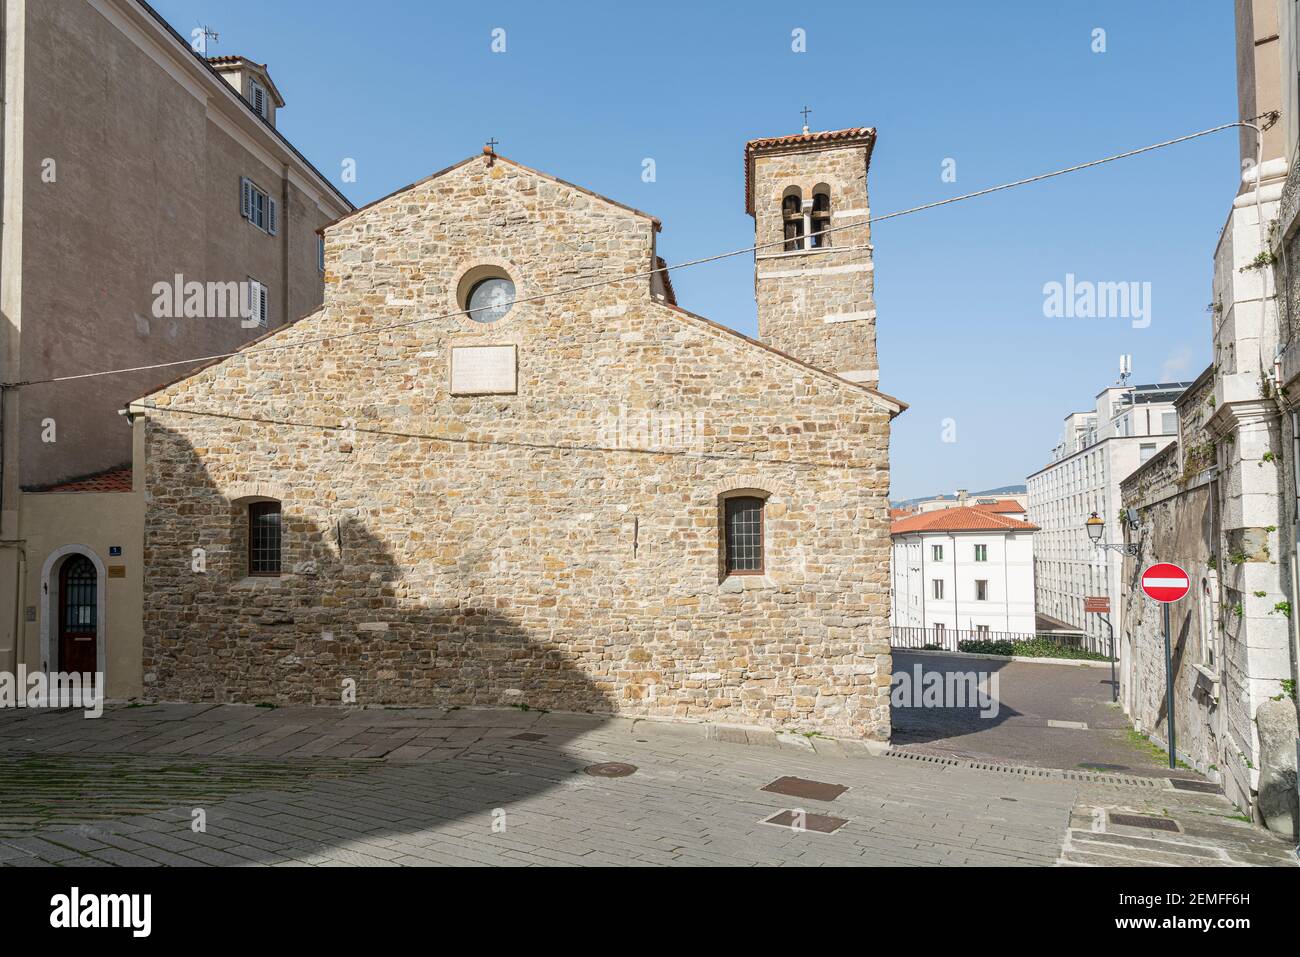 Trieste, Italia. 24 febbraio 2021. La vista esterna della basilica di San Silvestro nel centro della città Foto Stock